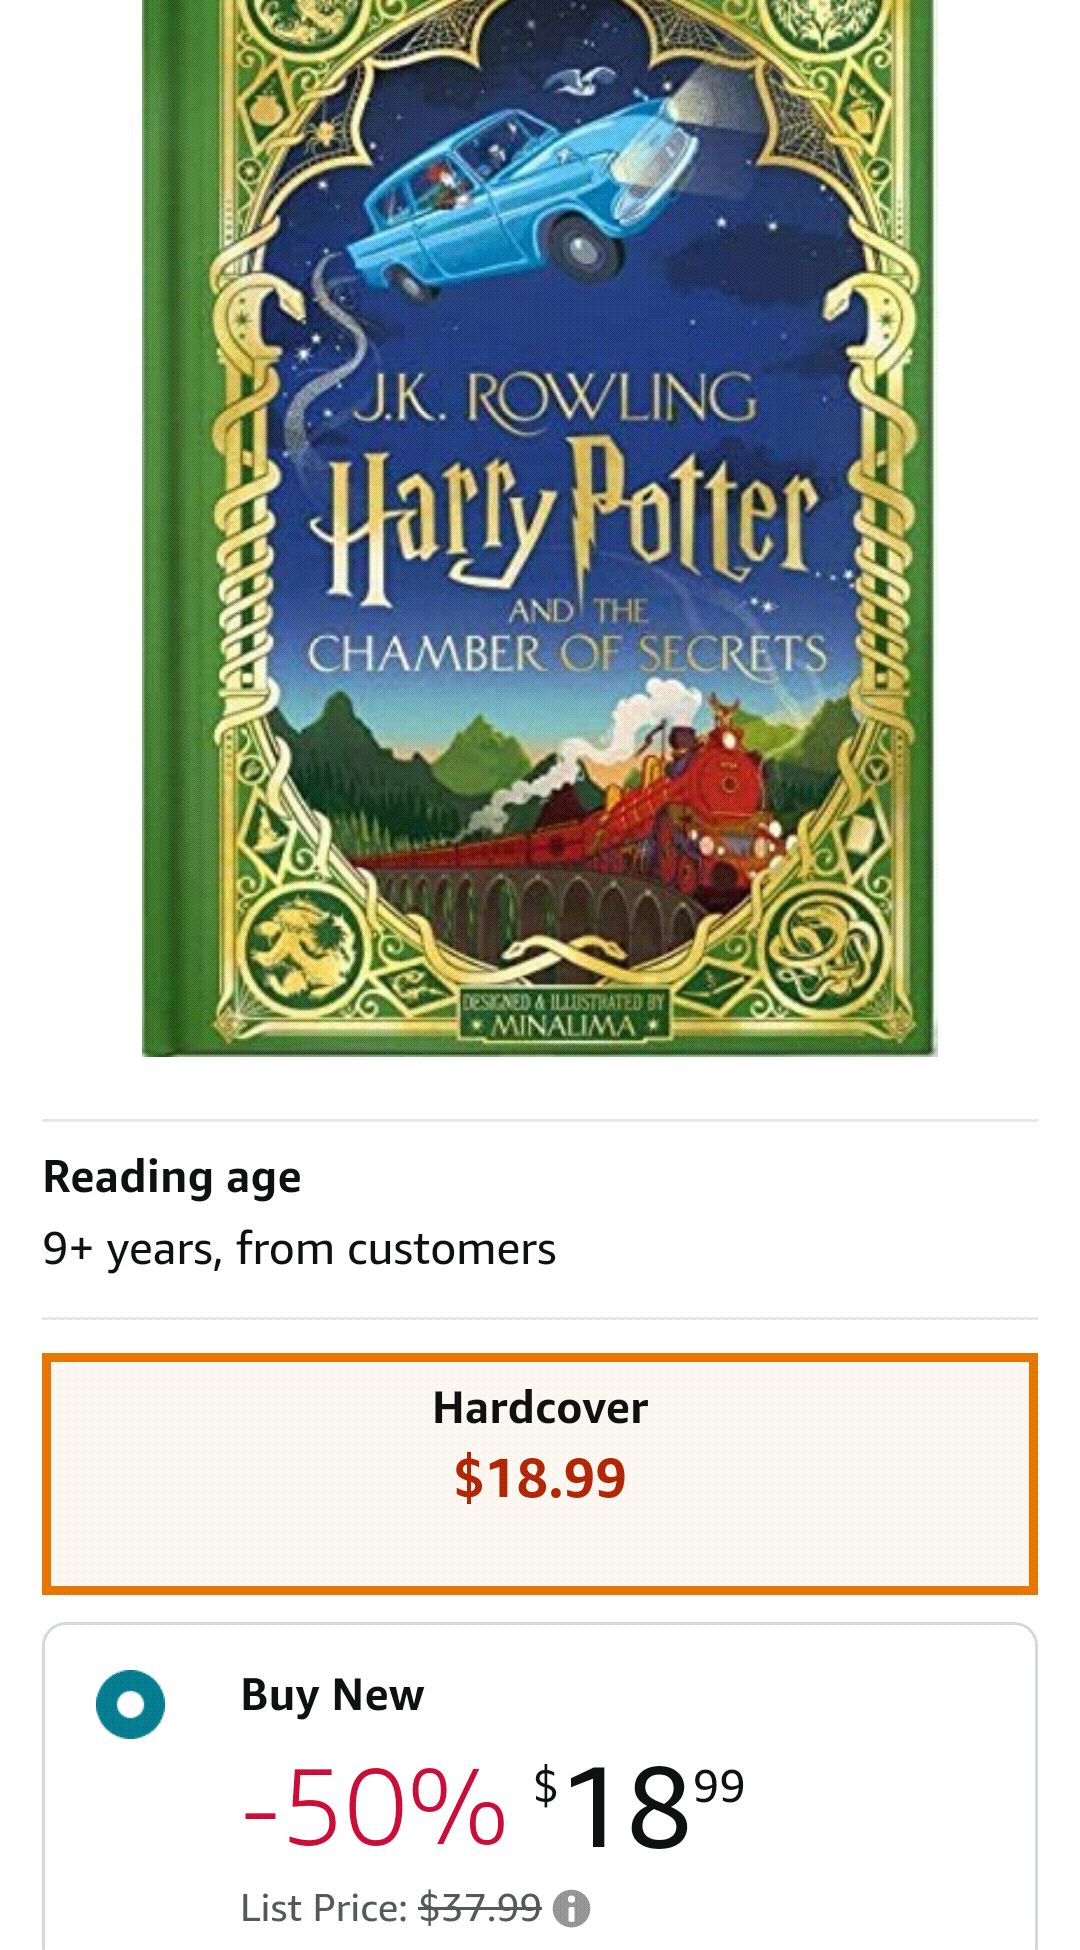 哈利波特2 互动书 Harry Potter and the Chamber of Secrets (MinaLima Edition) (Illustrated edition) (2): Rowling, J. K., Minalima: 9781338716535: Amazon.com: Books